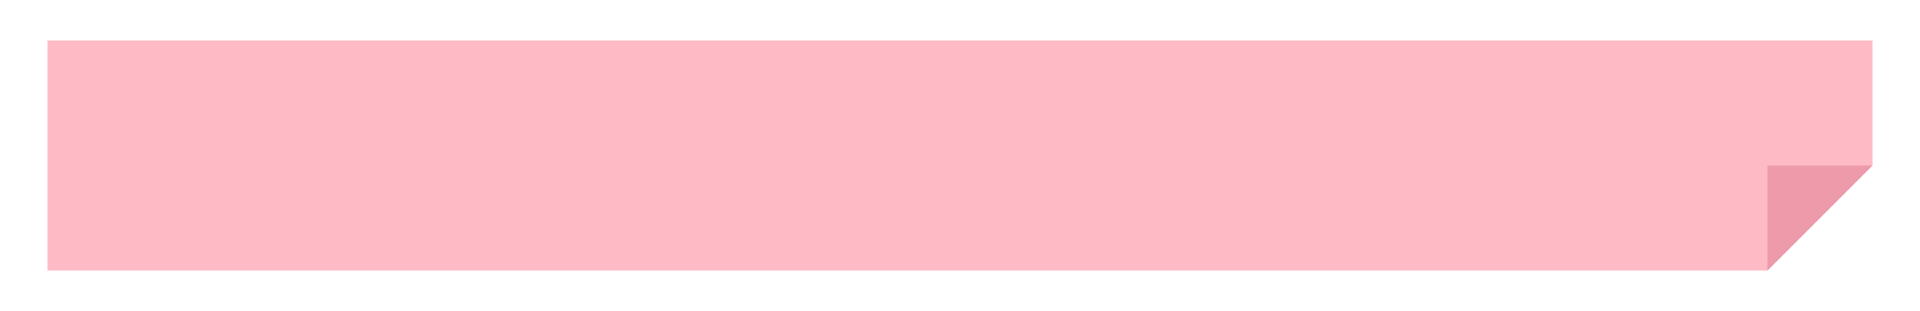 カラフルなメモ風テロップ素材ピンク